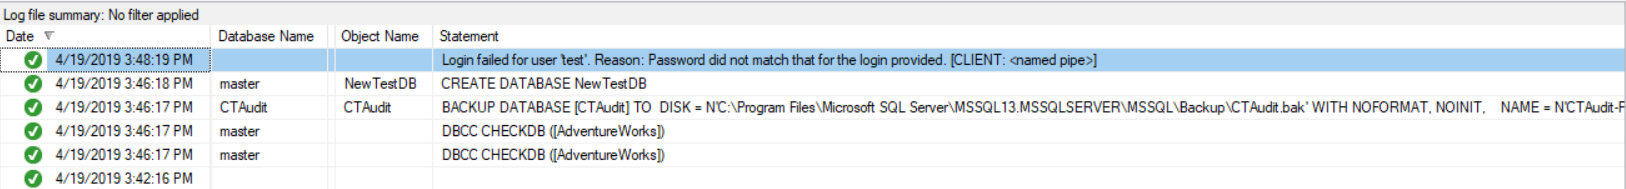 SQL Server Audit Log File Viewer 2